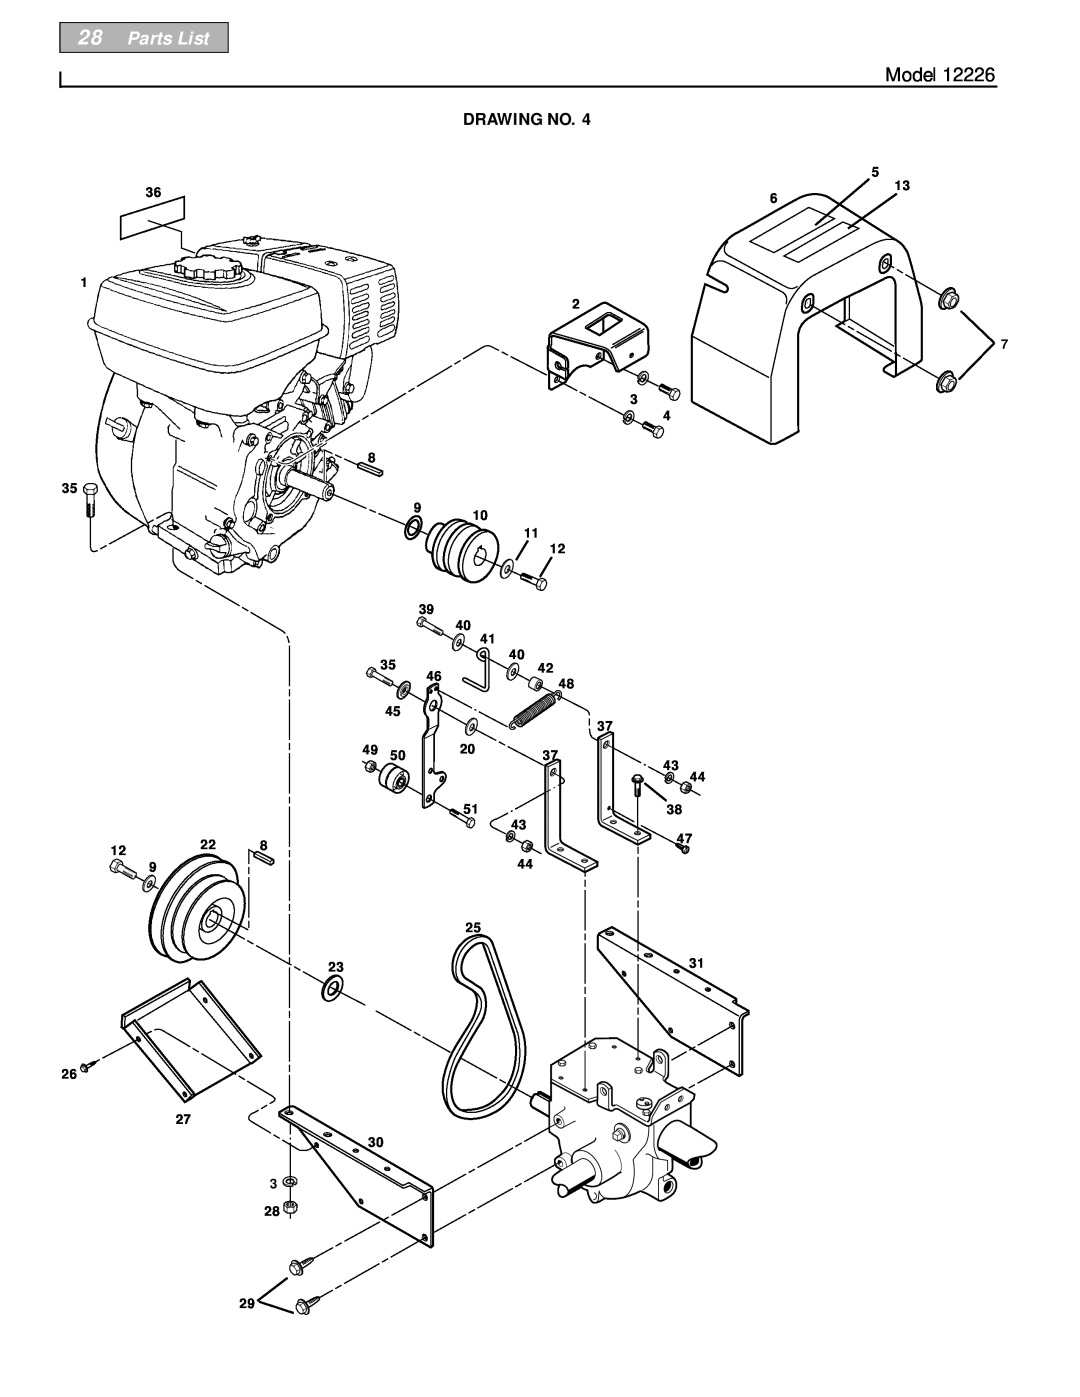 Bolens 12226 owner manual Parts List, Model, Drawing No 